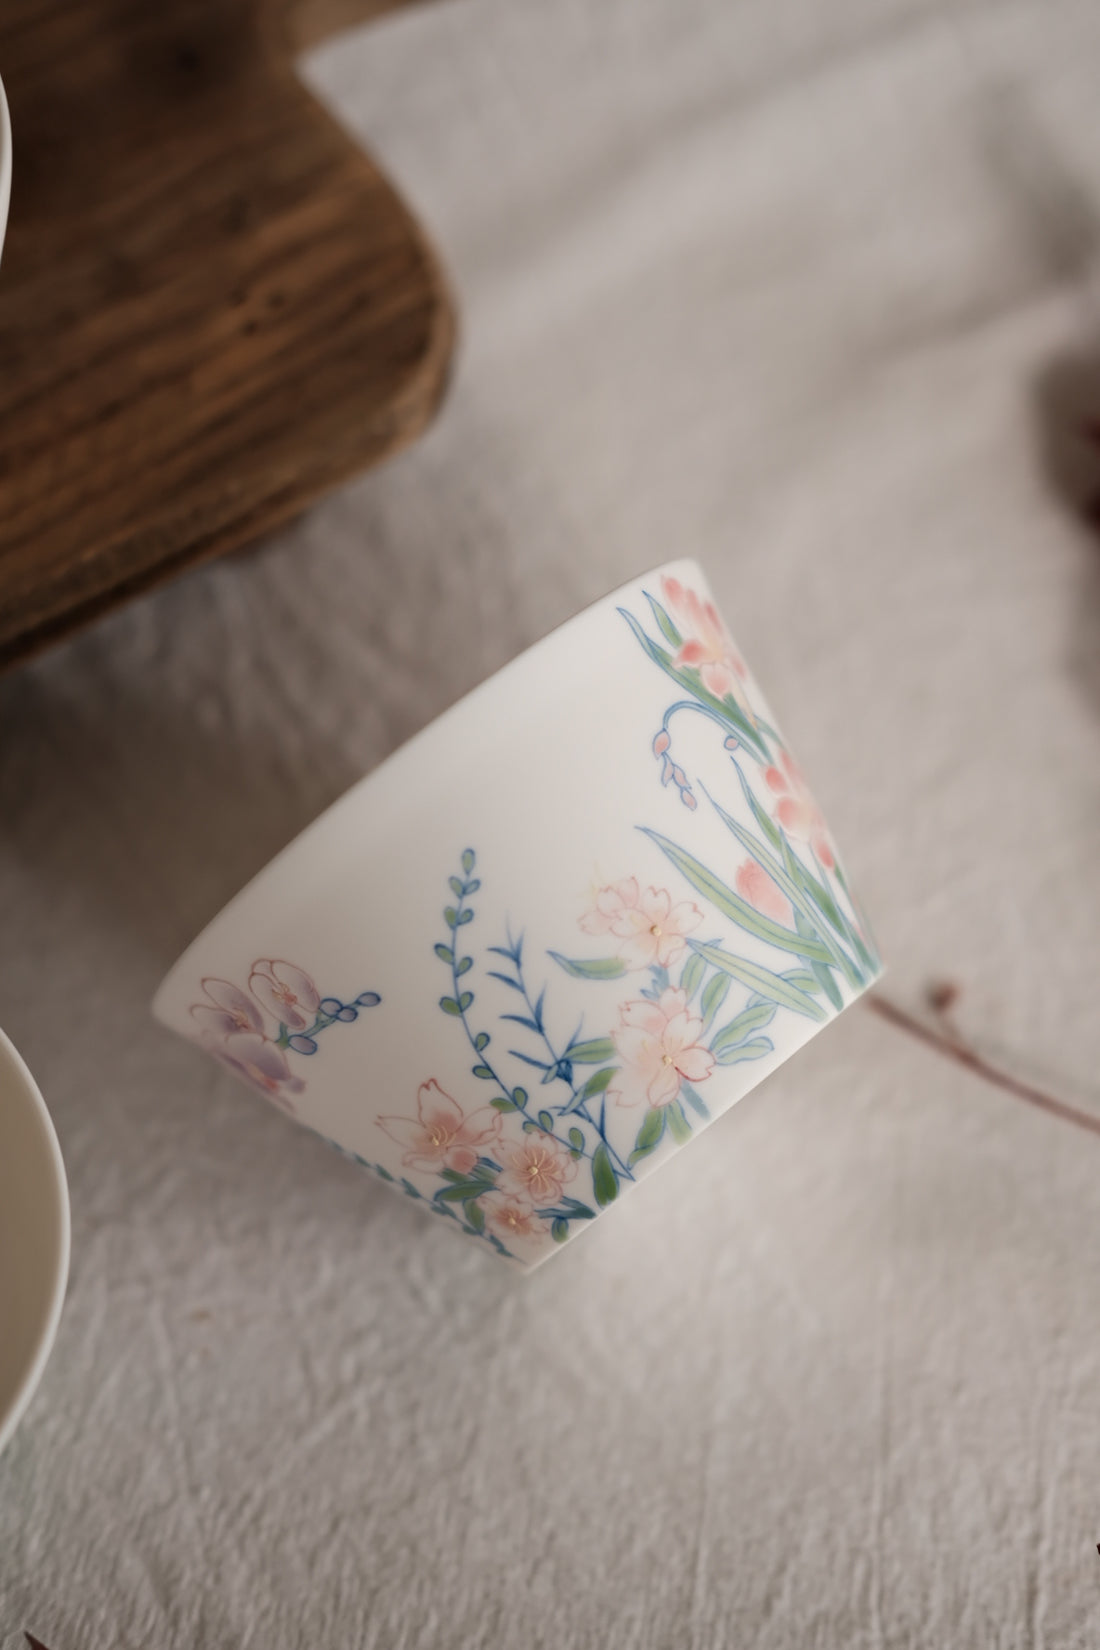 Spring Flower Coffee/Tea Cups- Biazhi Studio